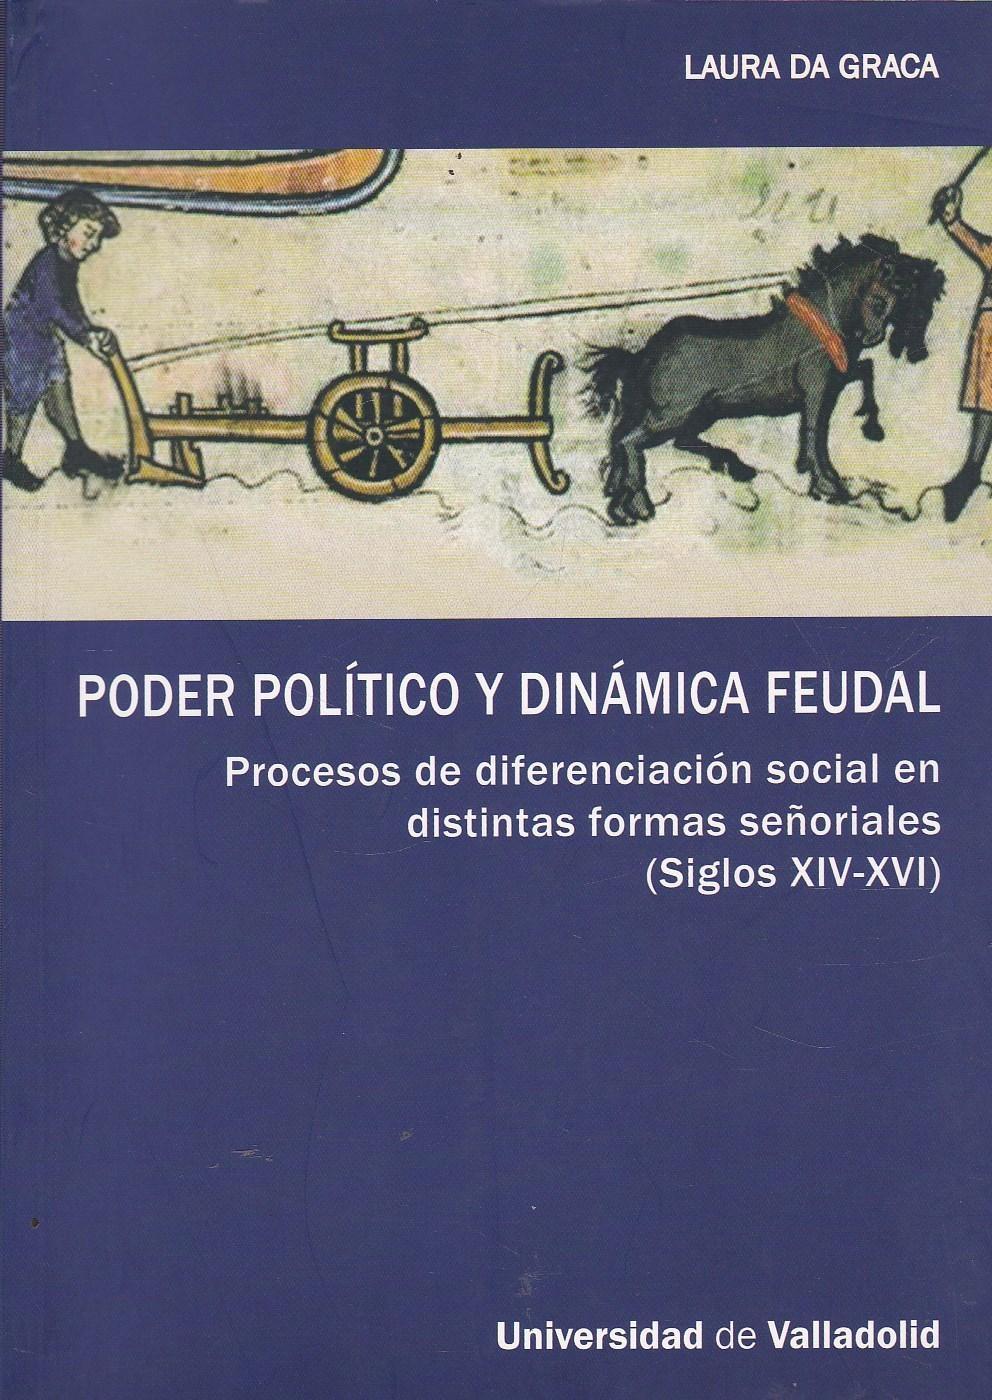 Poder político y dinámica feudal. Procesos de diferenciación social en distintas formas señoriales "Siglos XIV-XVI"